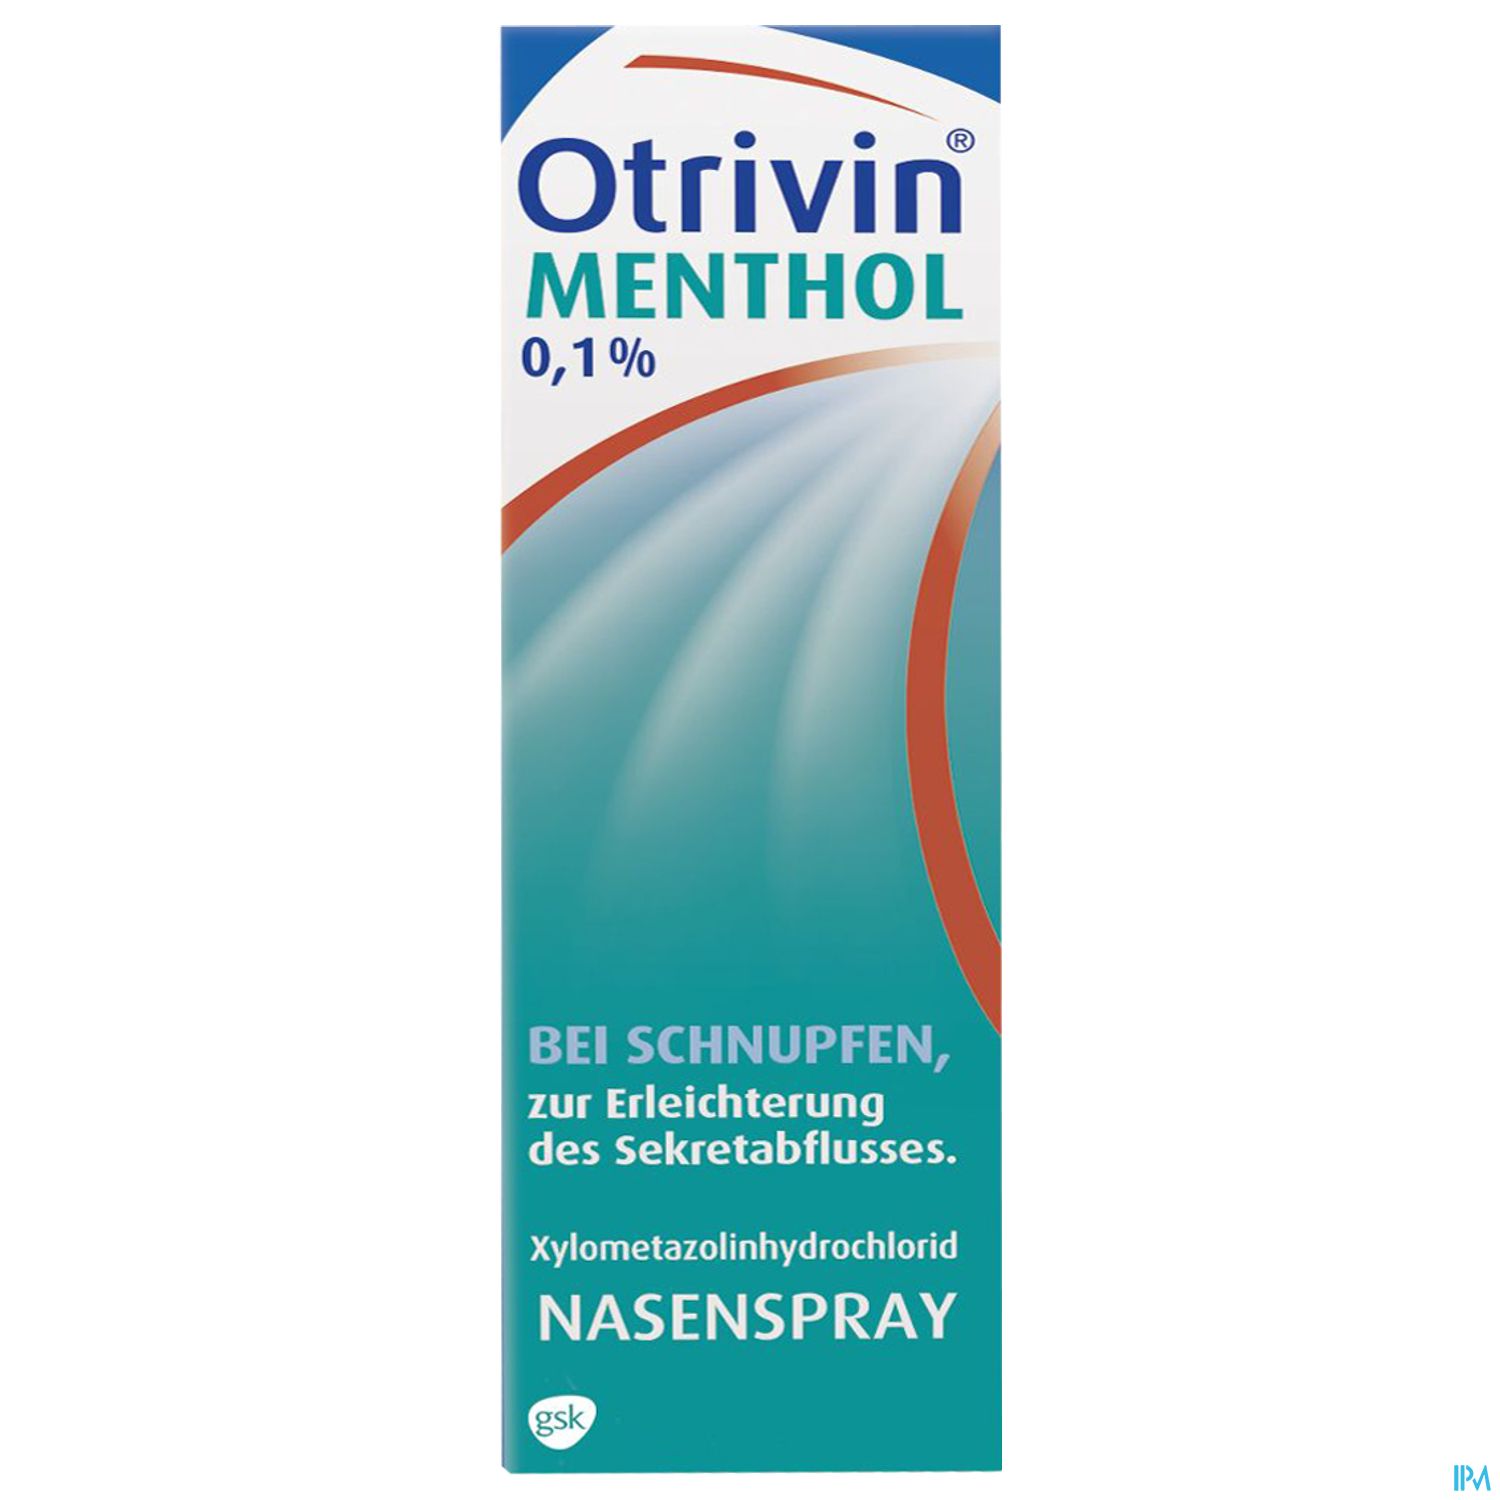 Otrivin Menthol 0,1% - Nasenspray